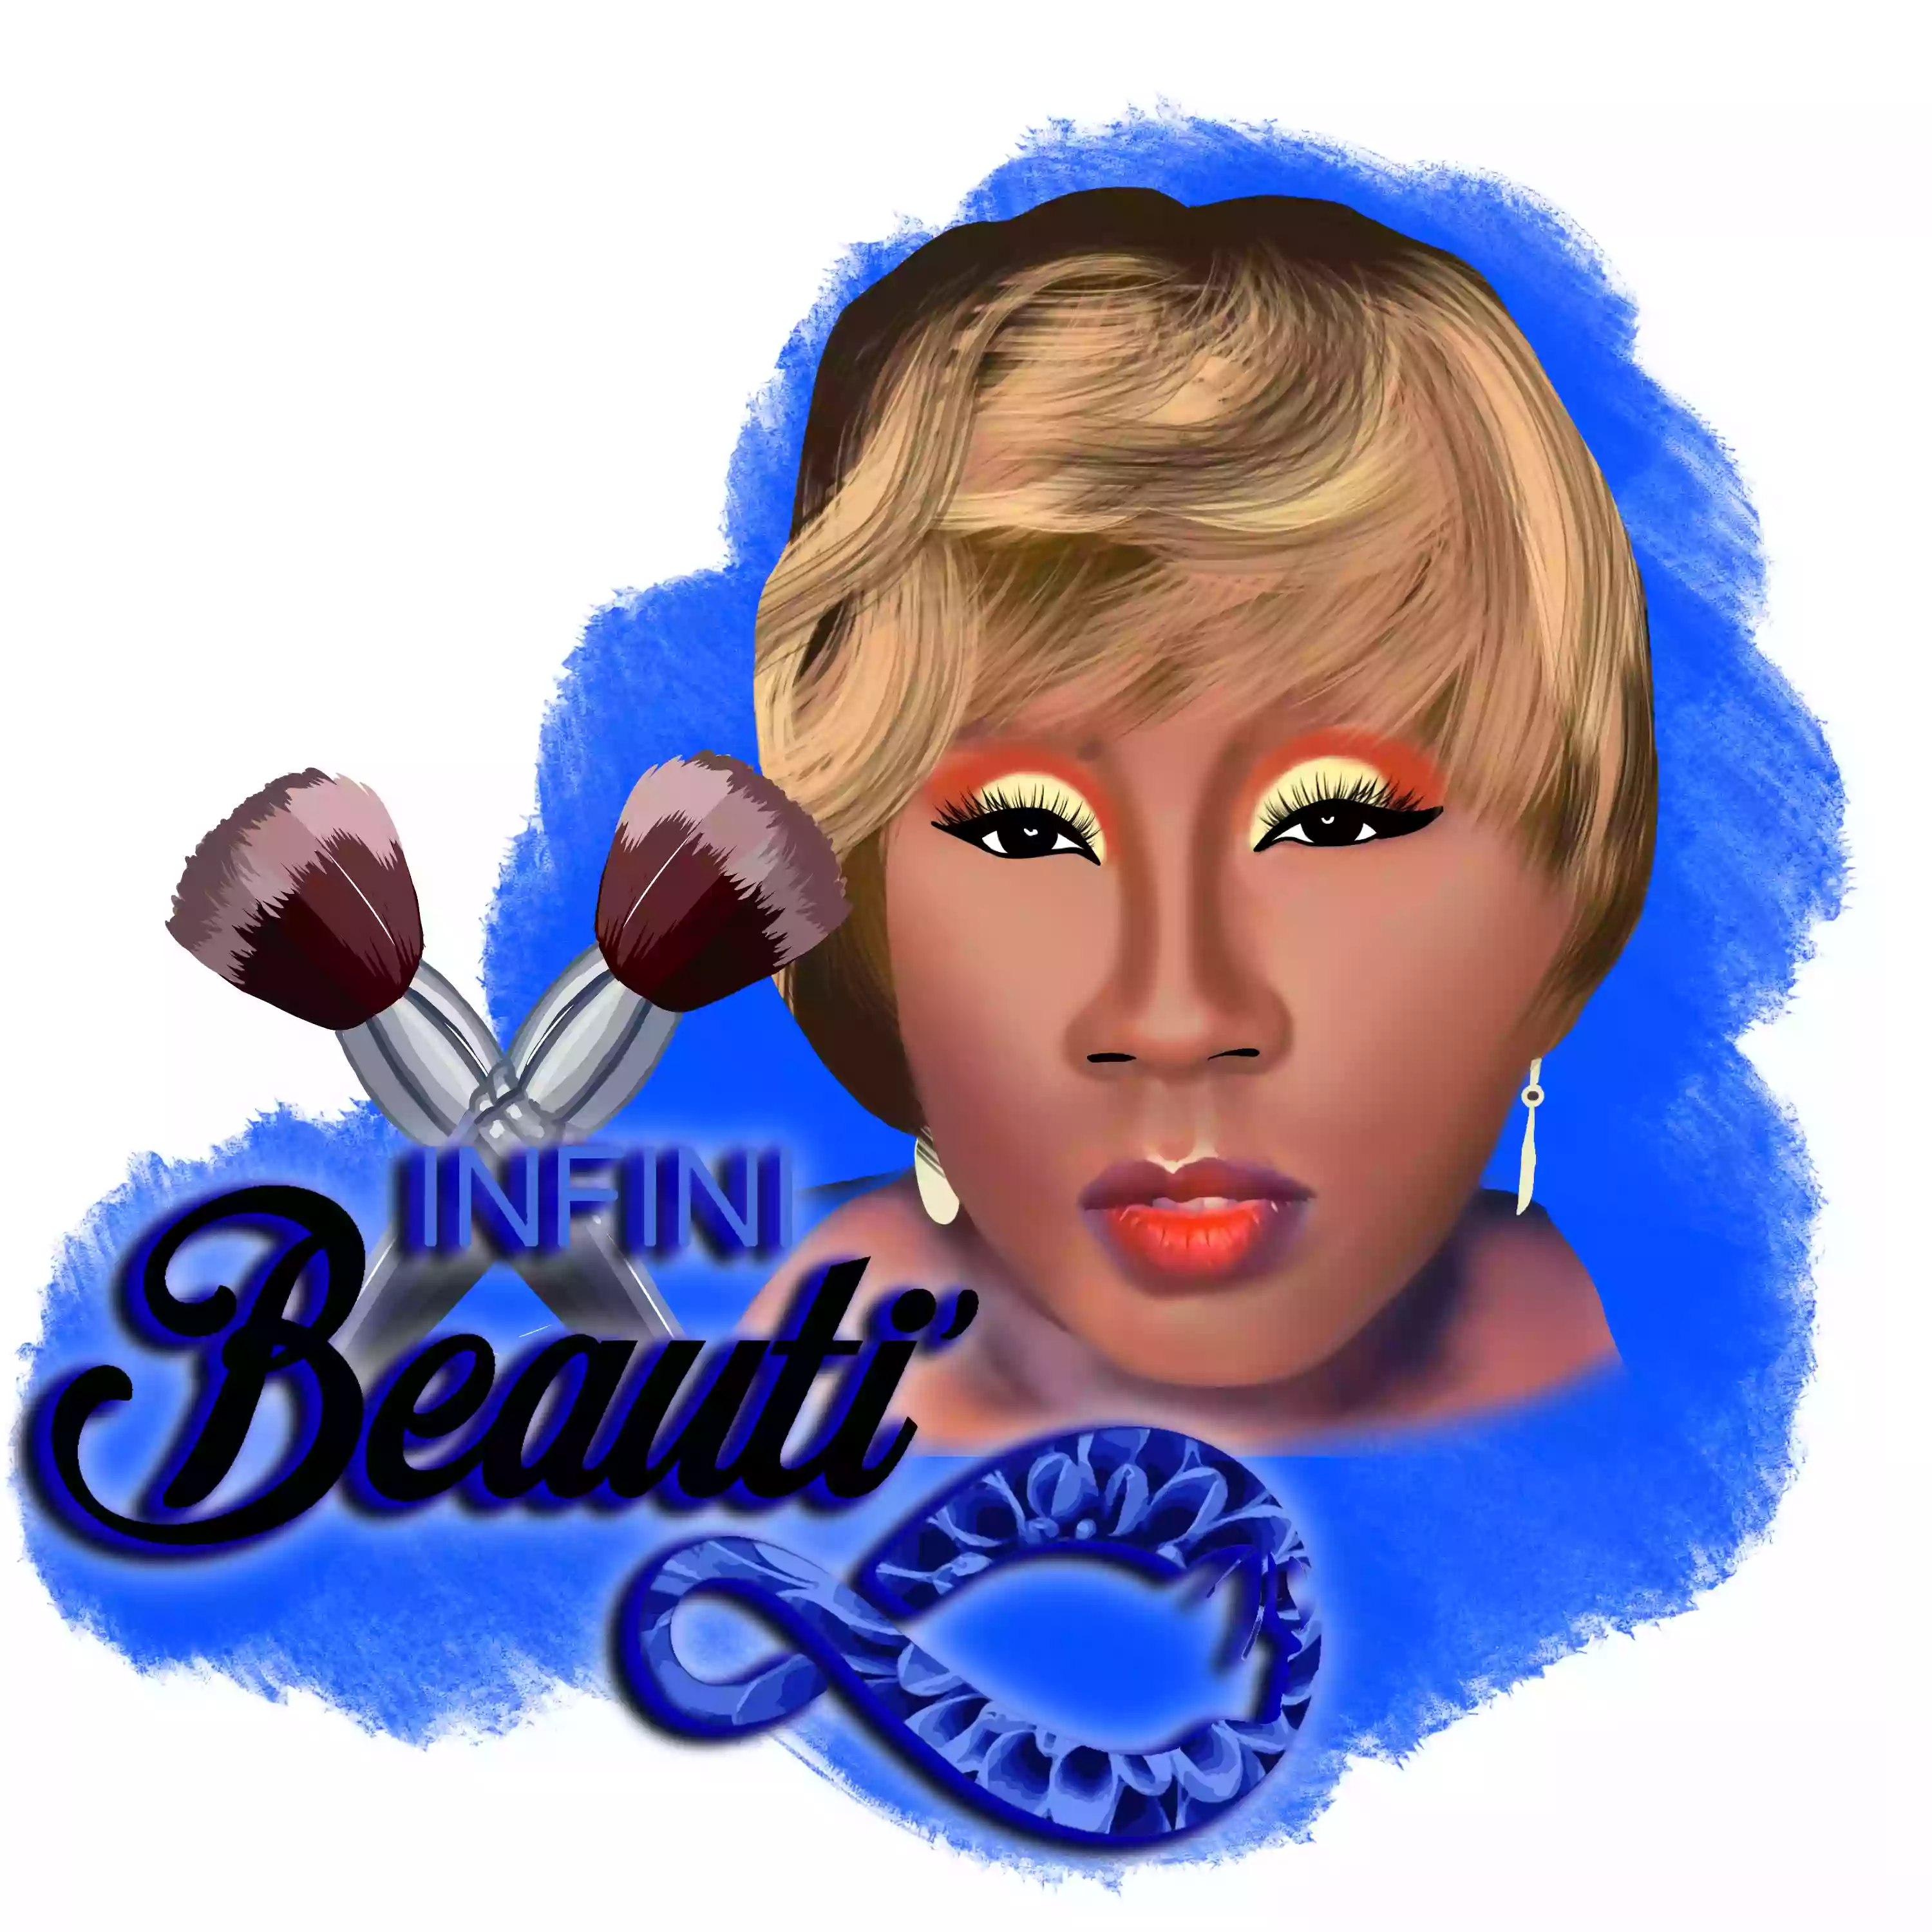 Infini’ Beautí Salon